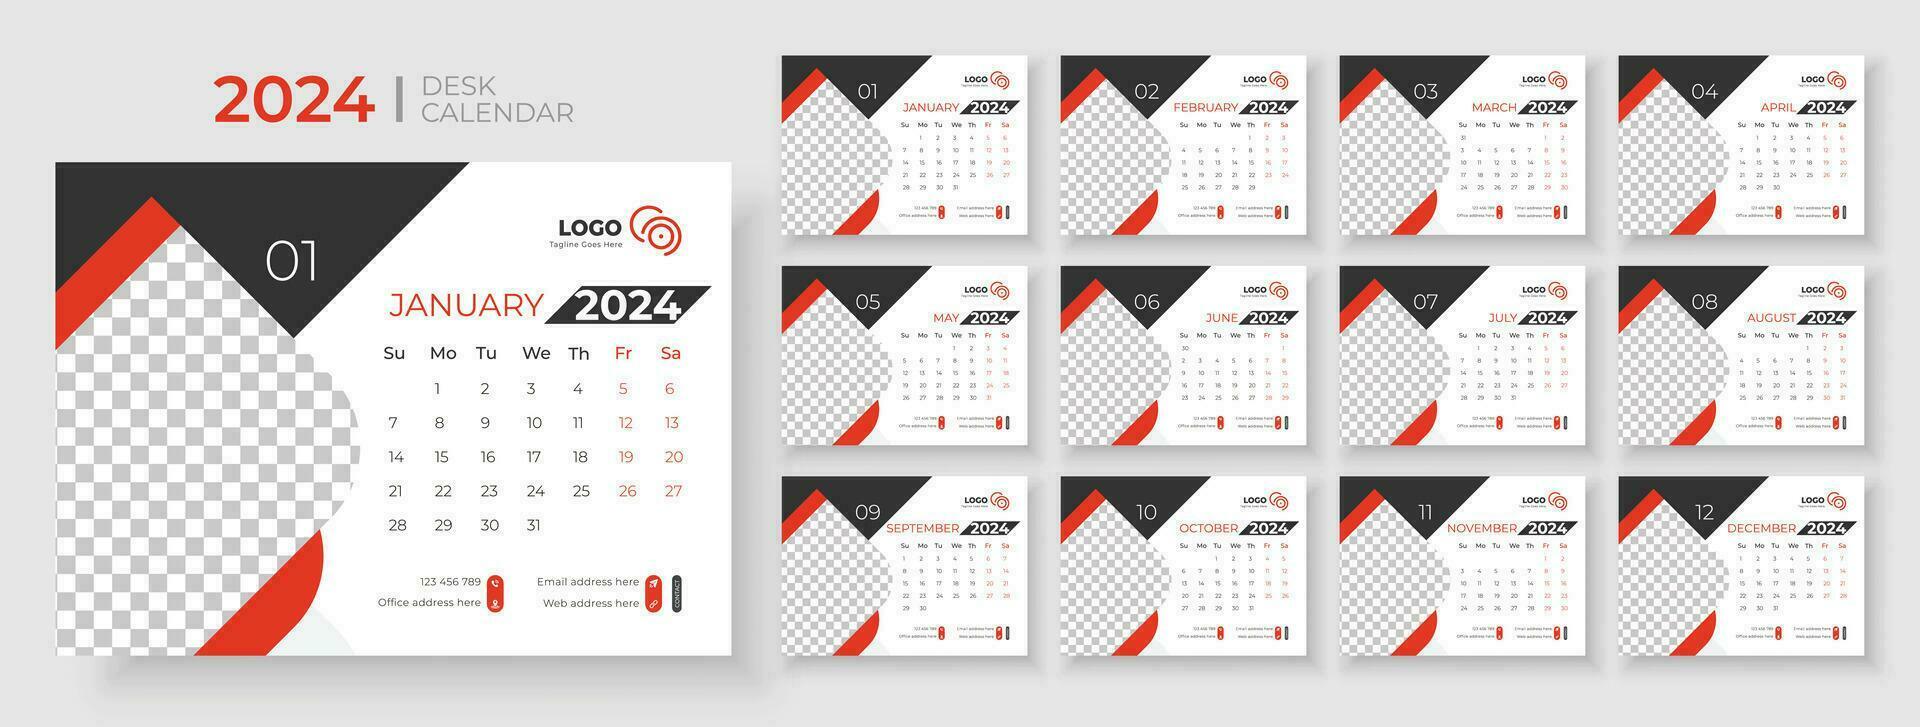 skrivbord kalender 2024 mall design, kontor kalender 2024, vecka börjar på söndag, planerare för 2024 år, mall för årlig kalender 2024 vektor